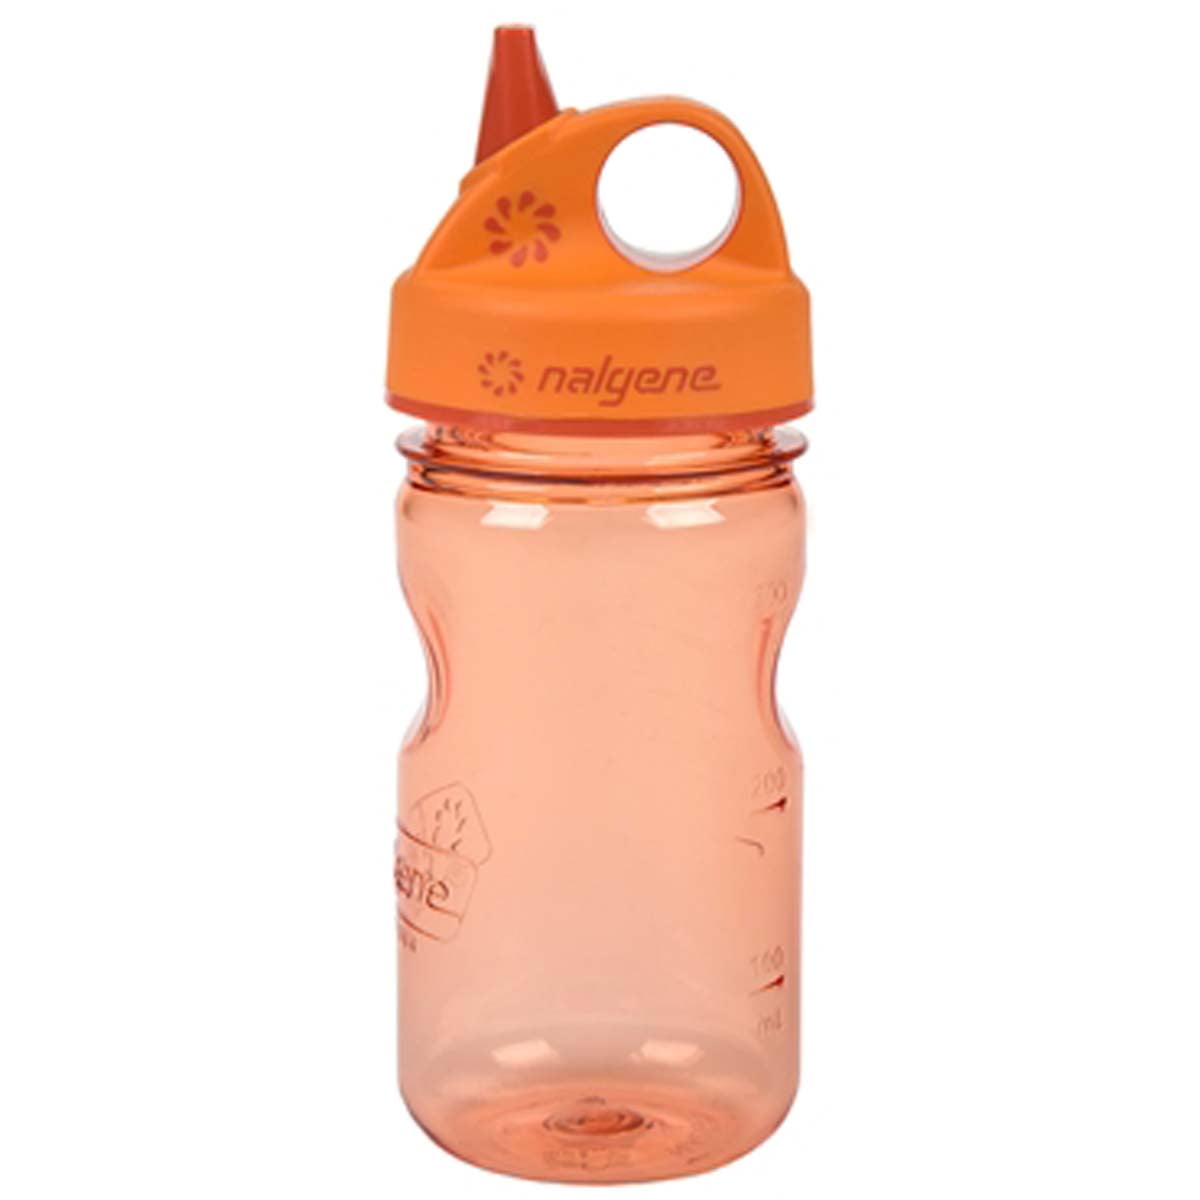  NALGENE Tritan Grip-N-Gulp BPA-Free Water Bottle,Slate Blue,12  Ounces : Sports Water Bottles : Sports & Outdoors